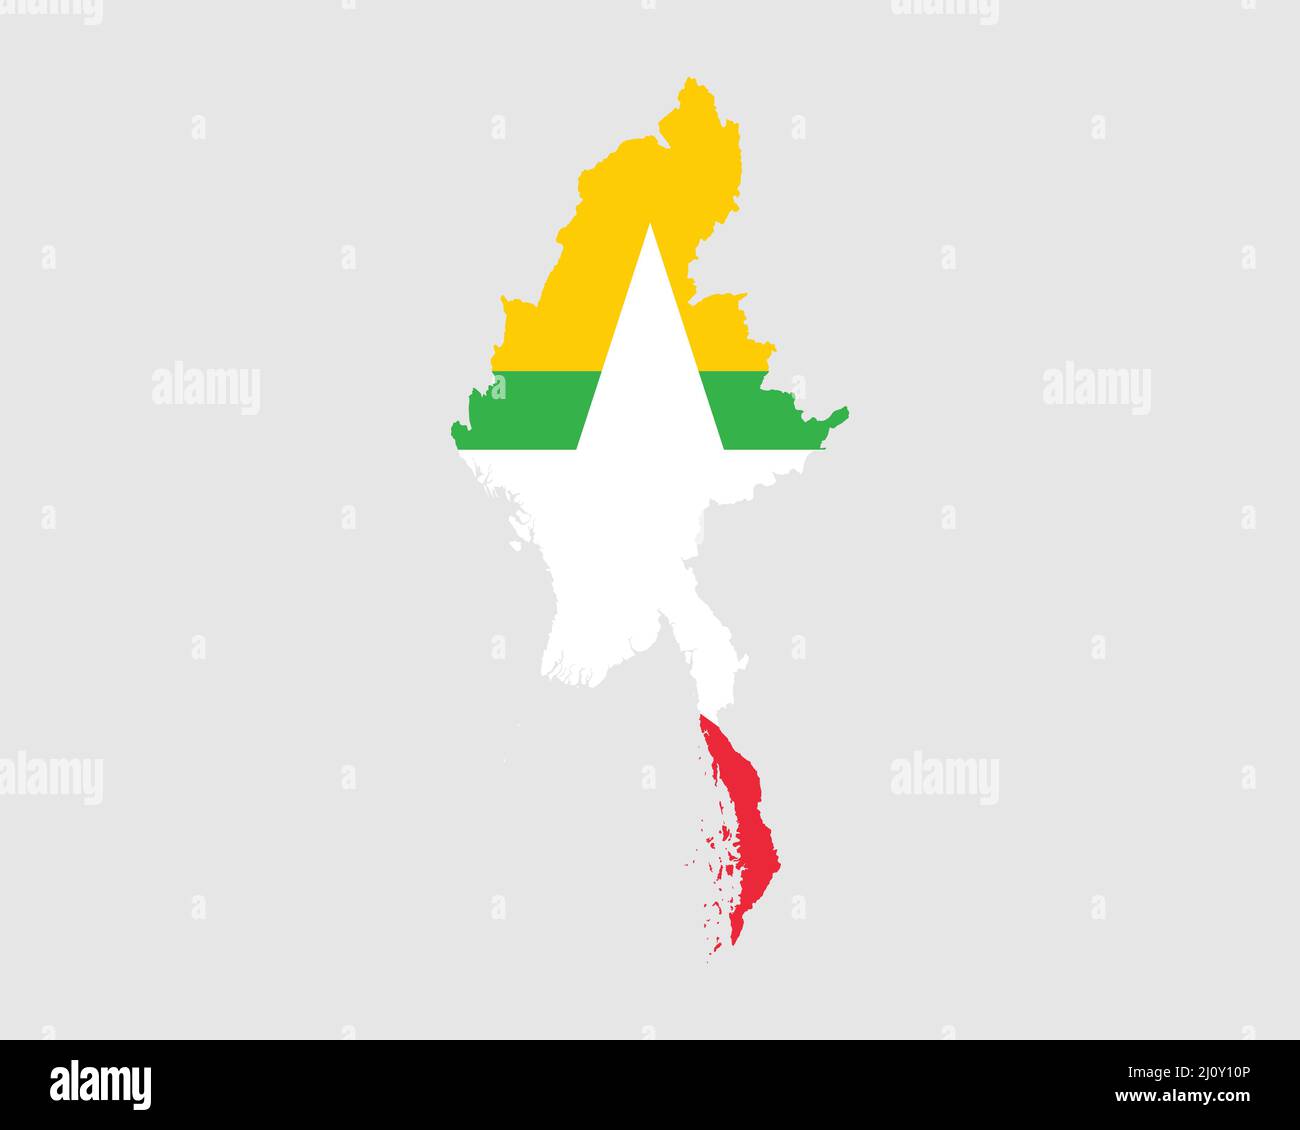 Birmanie Myanmar carte des drapeaux. Carte de la République de l'Union du Myanmar avec la bannière birmane. Illustration vectorielle. Illustration de Vecteur